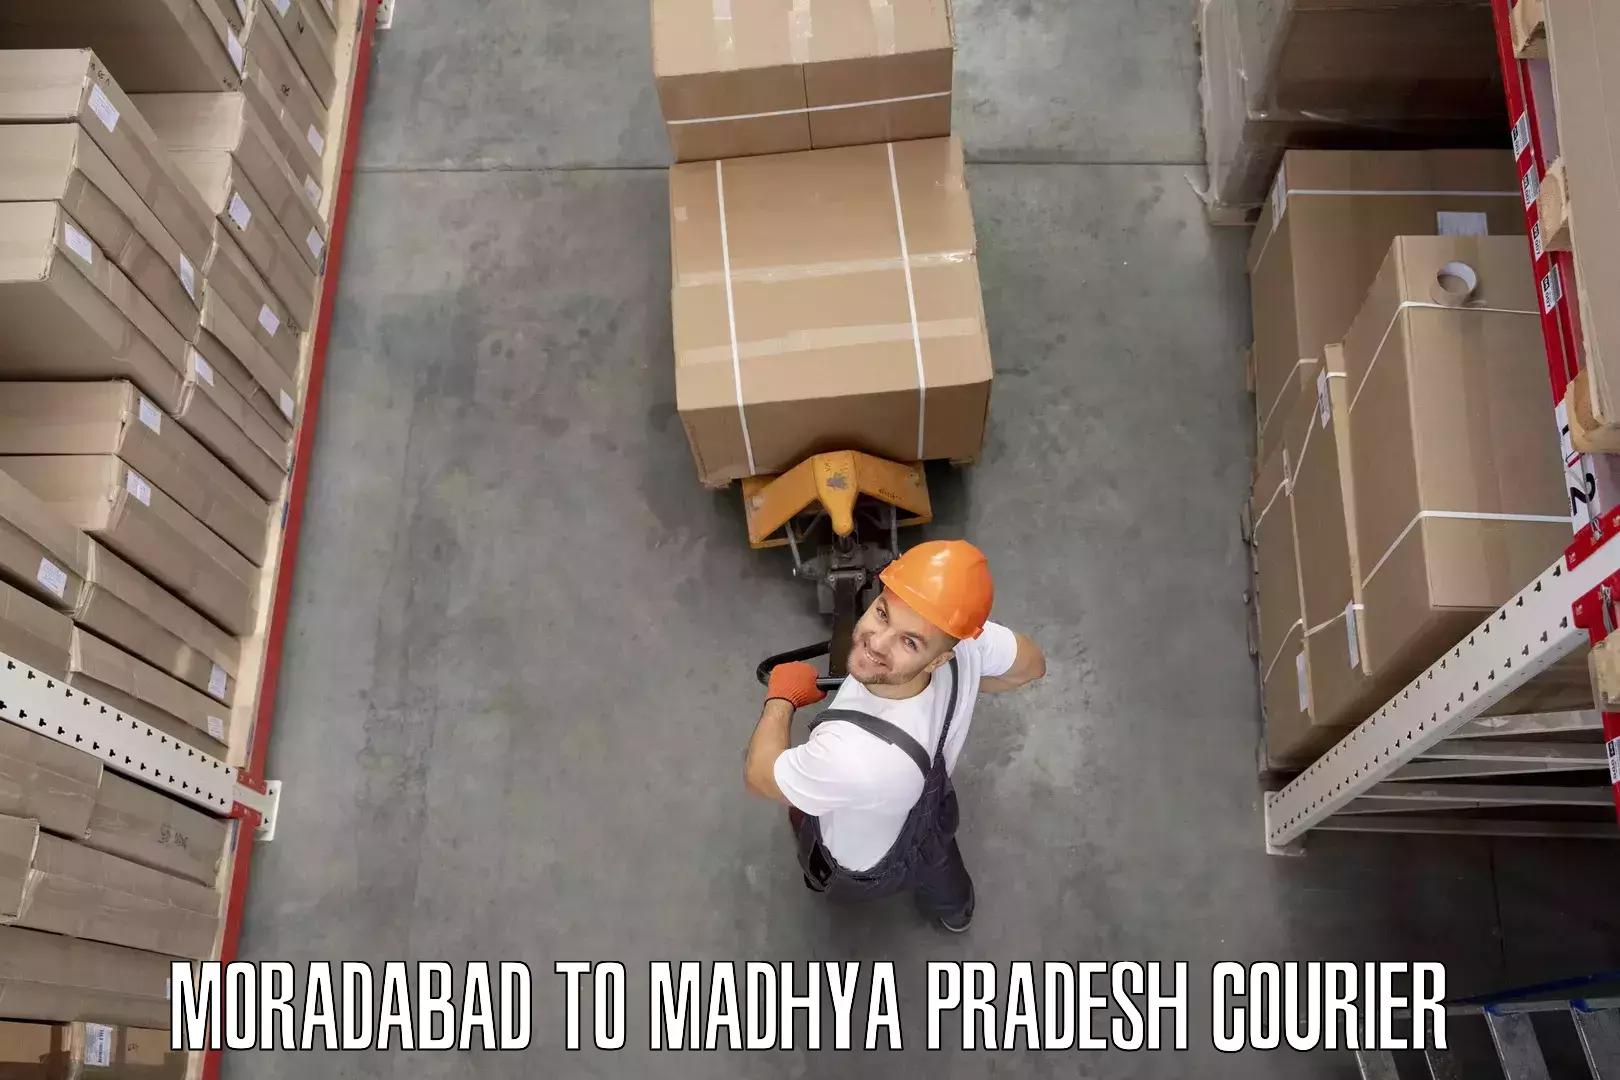 Furniture moving experts Moradabad to Sendhwa